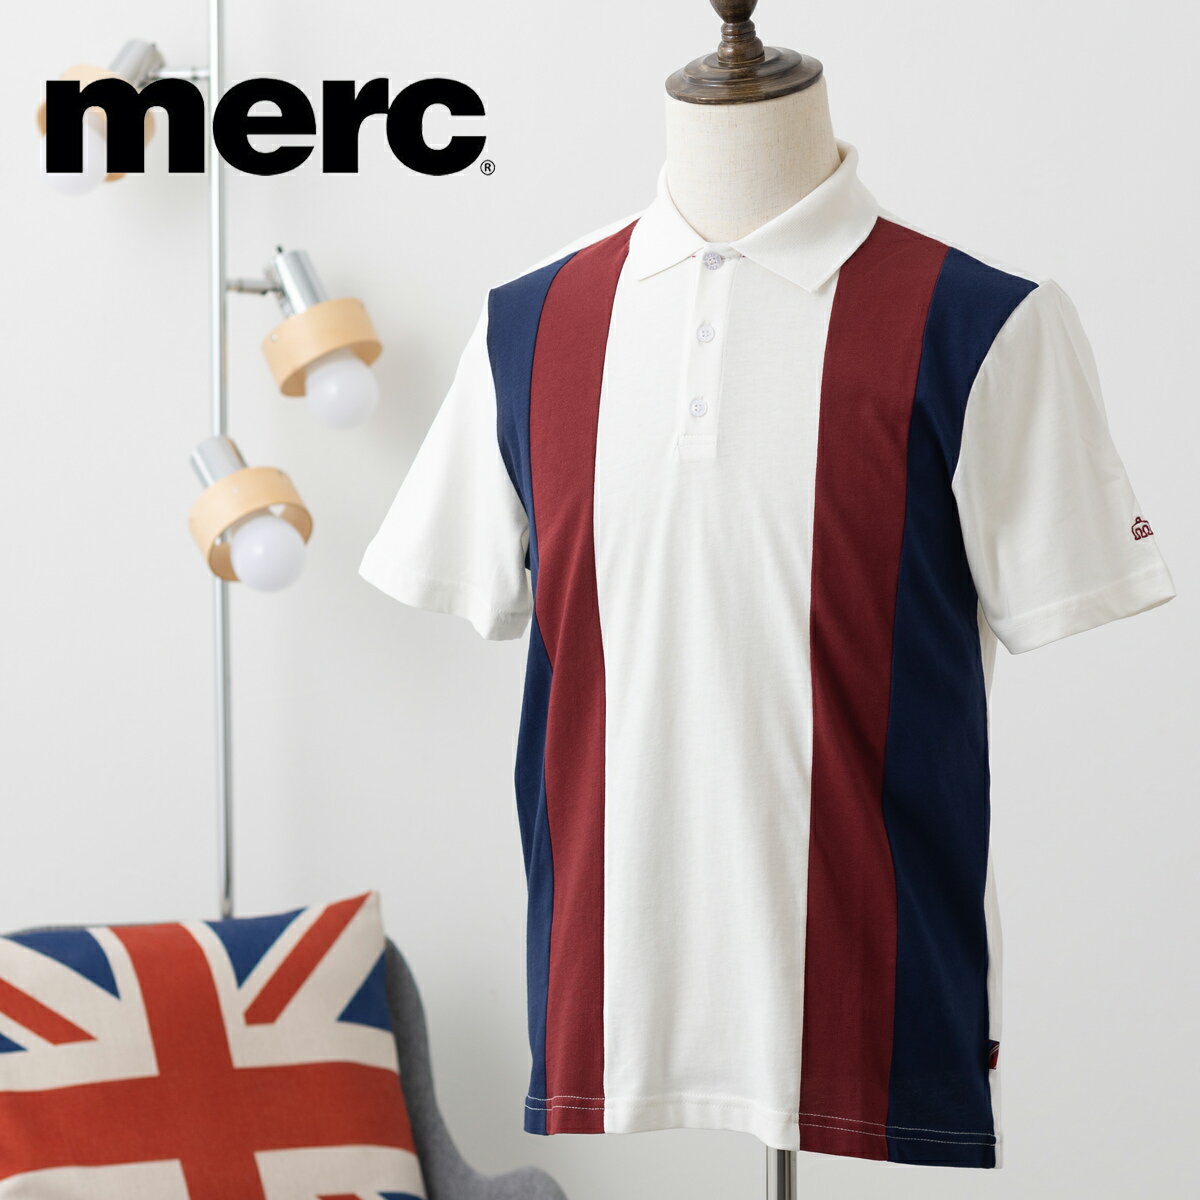 メルクロンドン メンズ 半袖ポロシャツ ヴァーティカルストライプ ポロシャツ Merc London 新作 20バニラ コットン トリコロールカラー モッズファッション ギフト トラッド